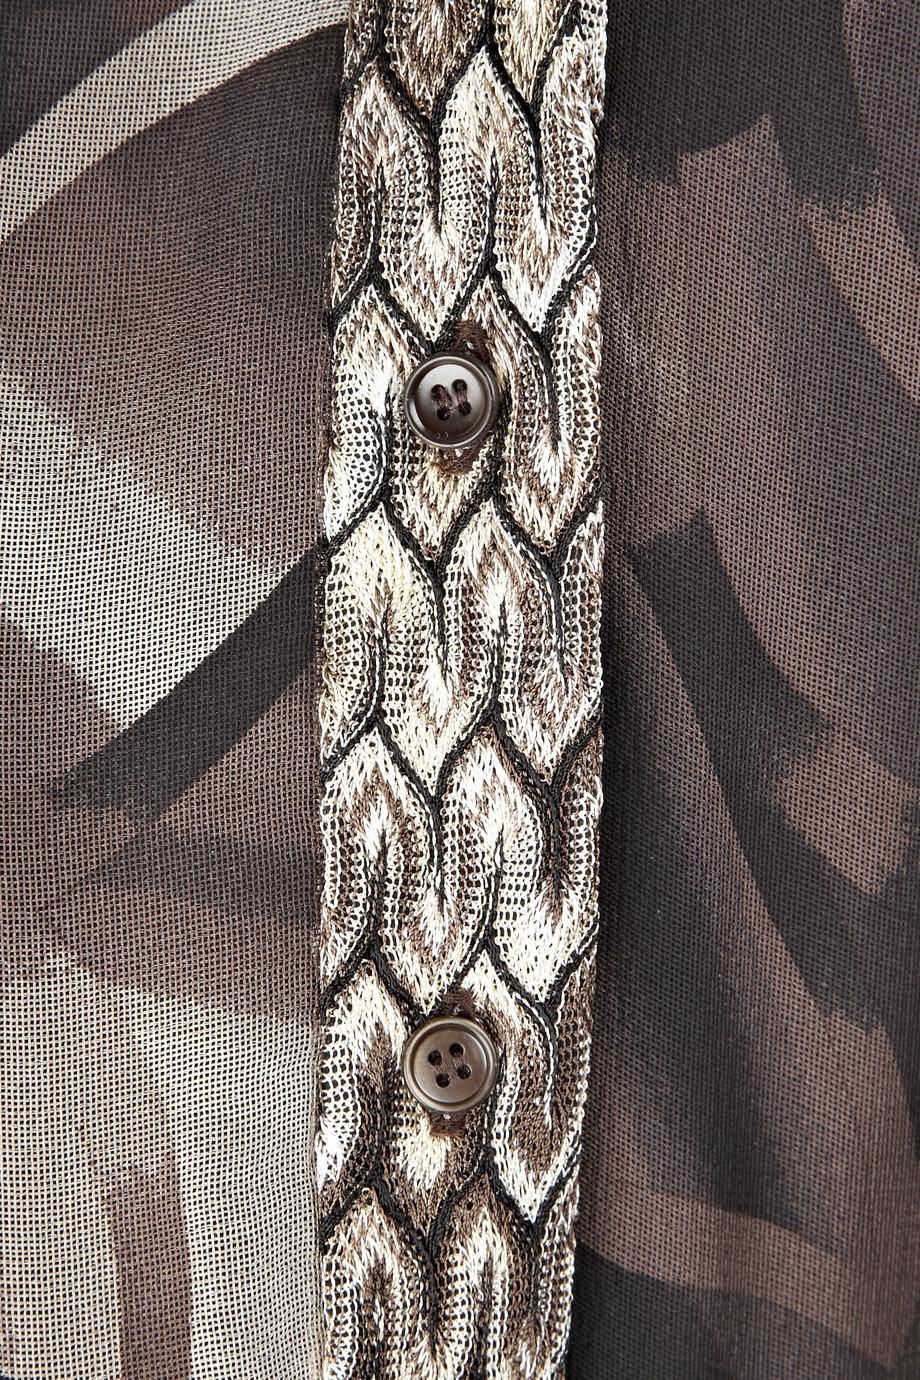 Diese von Missoni entworfene Bluse mit ihrem charakteristischen Webmuster ist zu elegant, um ihr zu widerstehen! 
Eine wunderbare Kombination aus Missoni's charakteristischem Häkelstrick mit   Seide mit einer geknöpften Vorderseite.

Einzelheiten:

